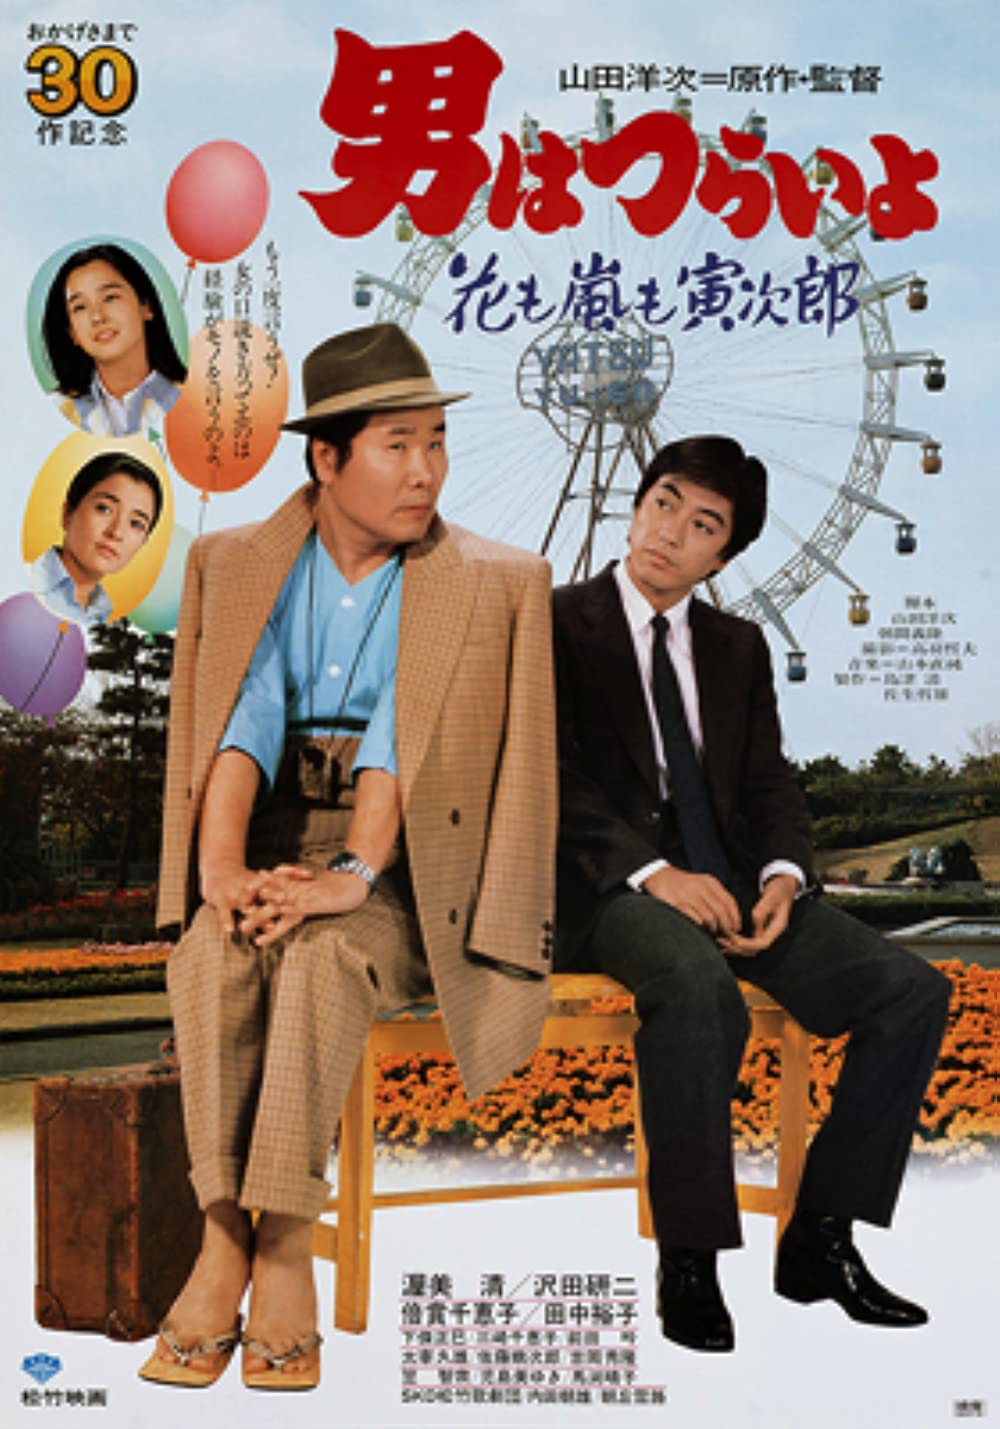 دانلود فیلم Otoko wa tsurai yo: Hana mo arashi mo Torajirô 1982